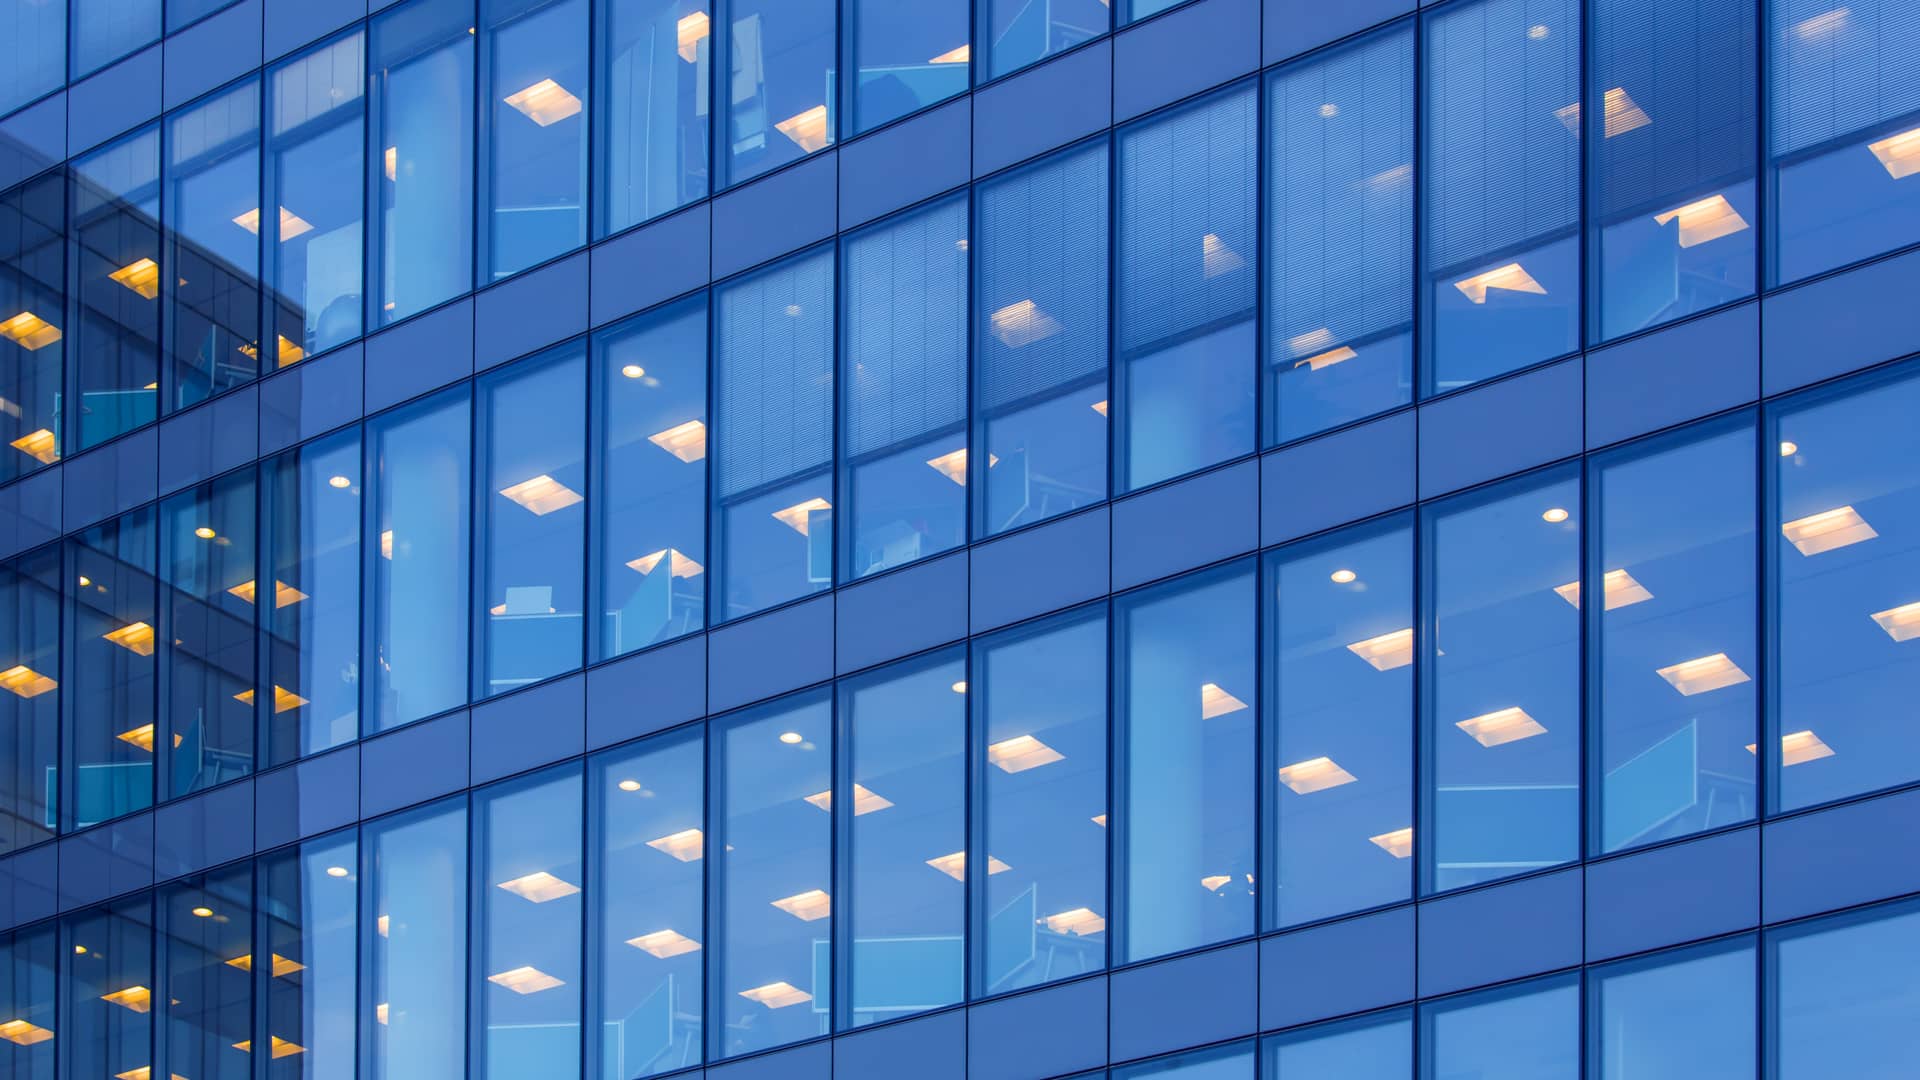 fachada de una de las oficinas de la empresa de alamras trablisa con los cristales azul oscuros